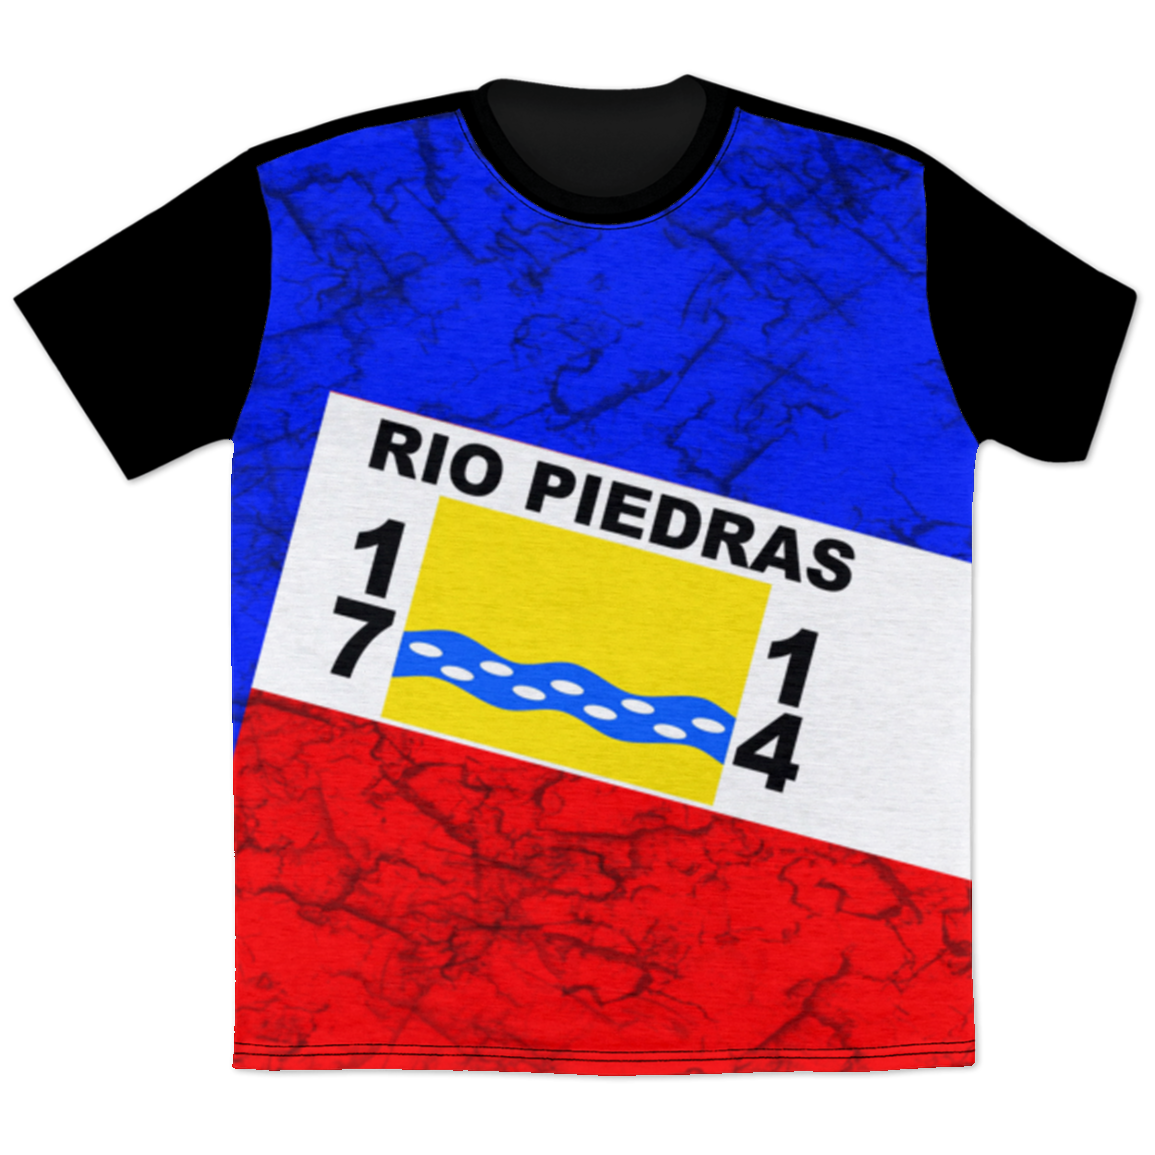 Rio Piedras T-Shirt - Puerto Rican Pride